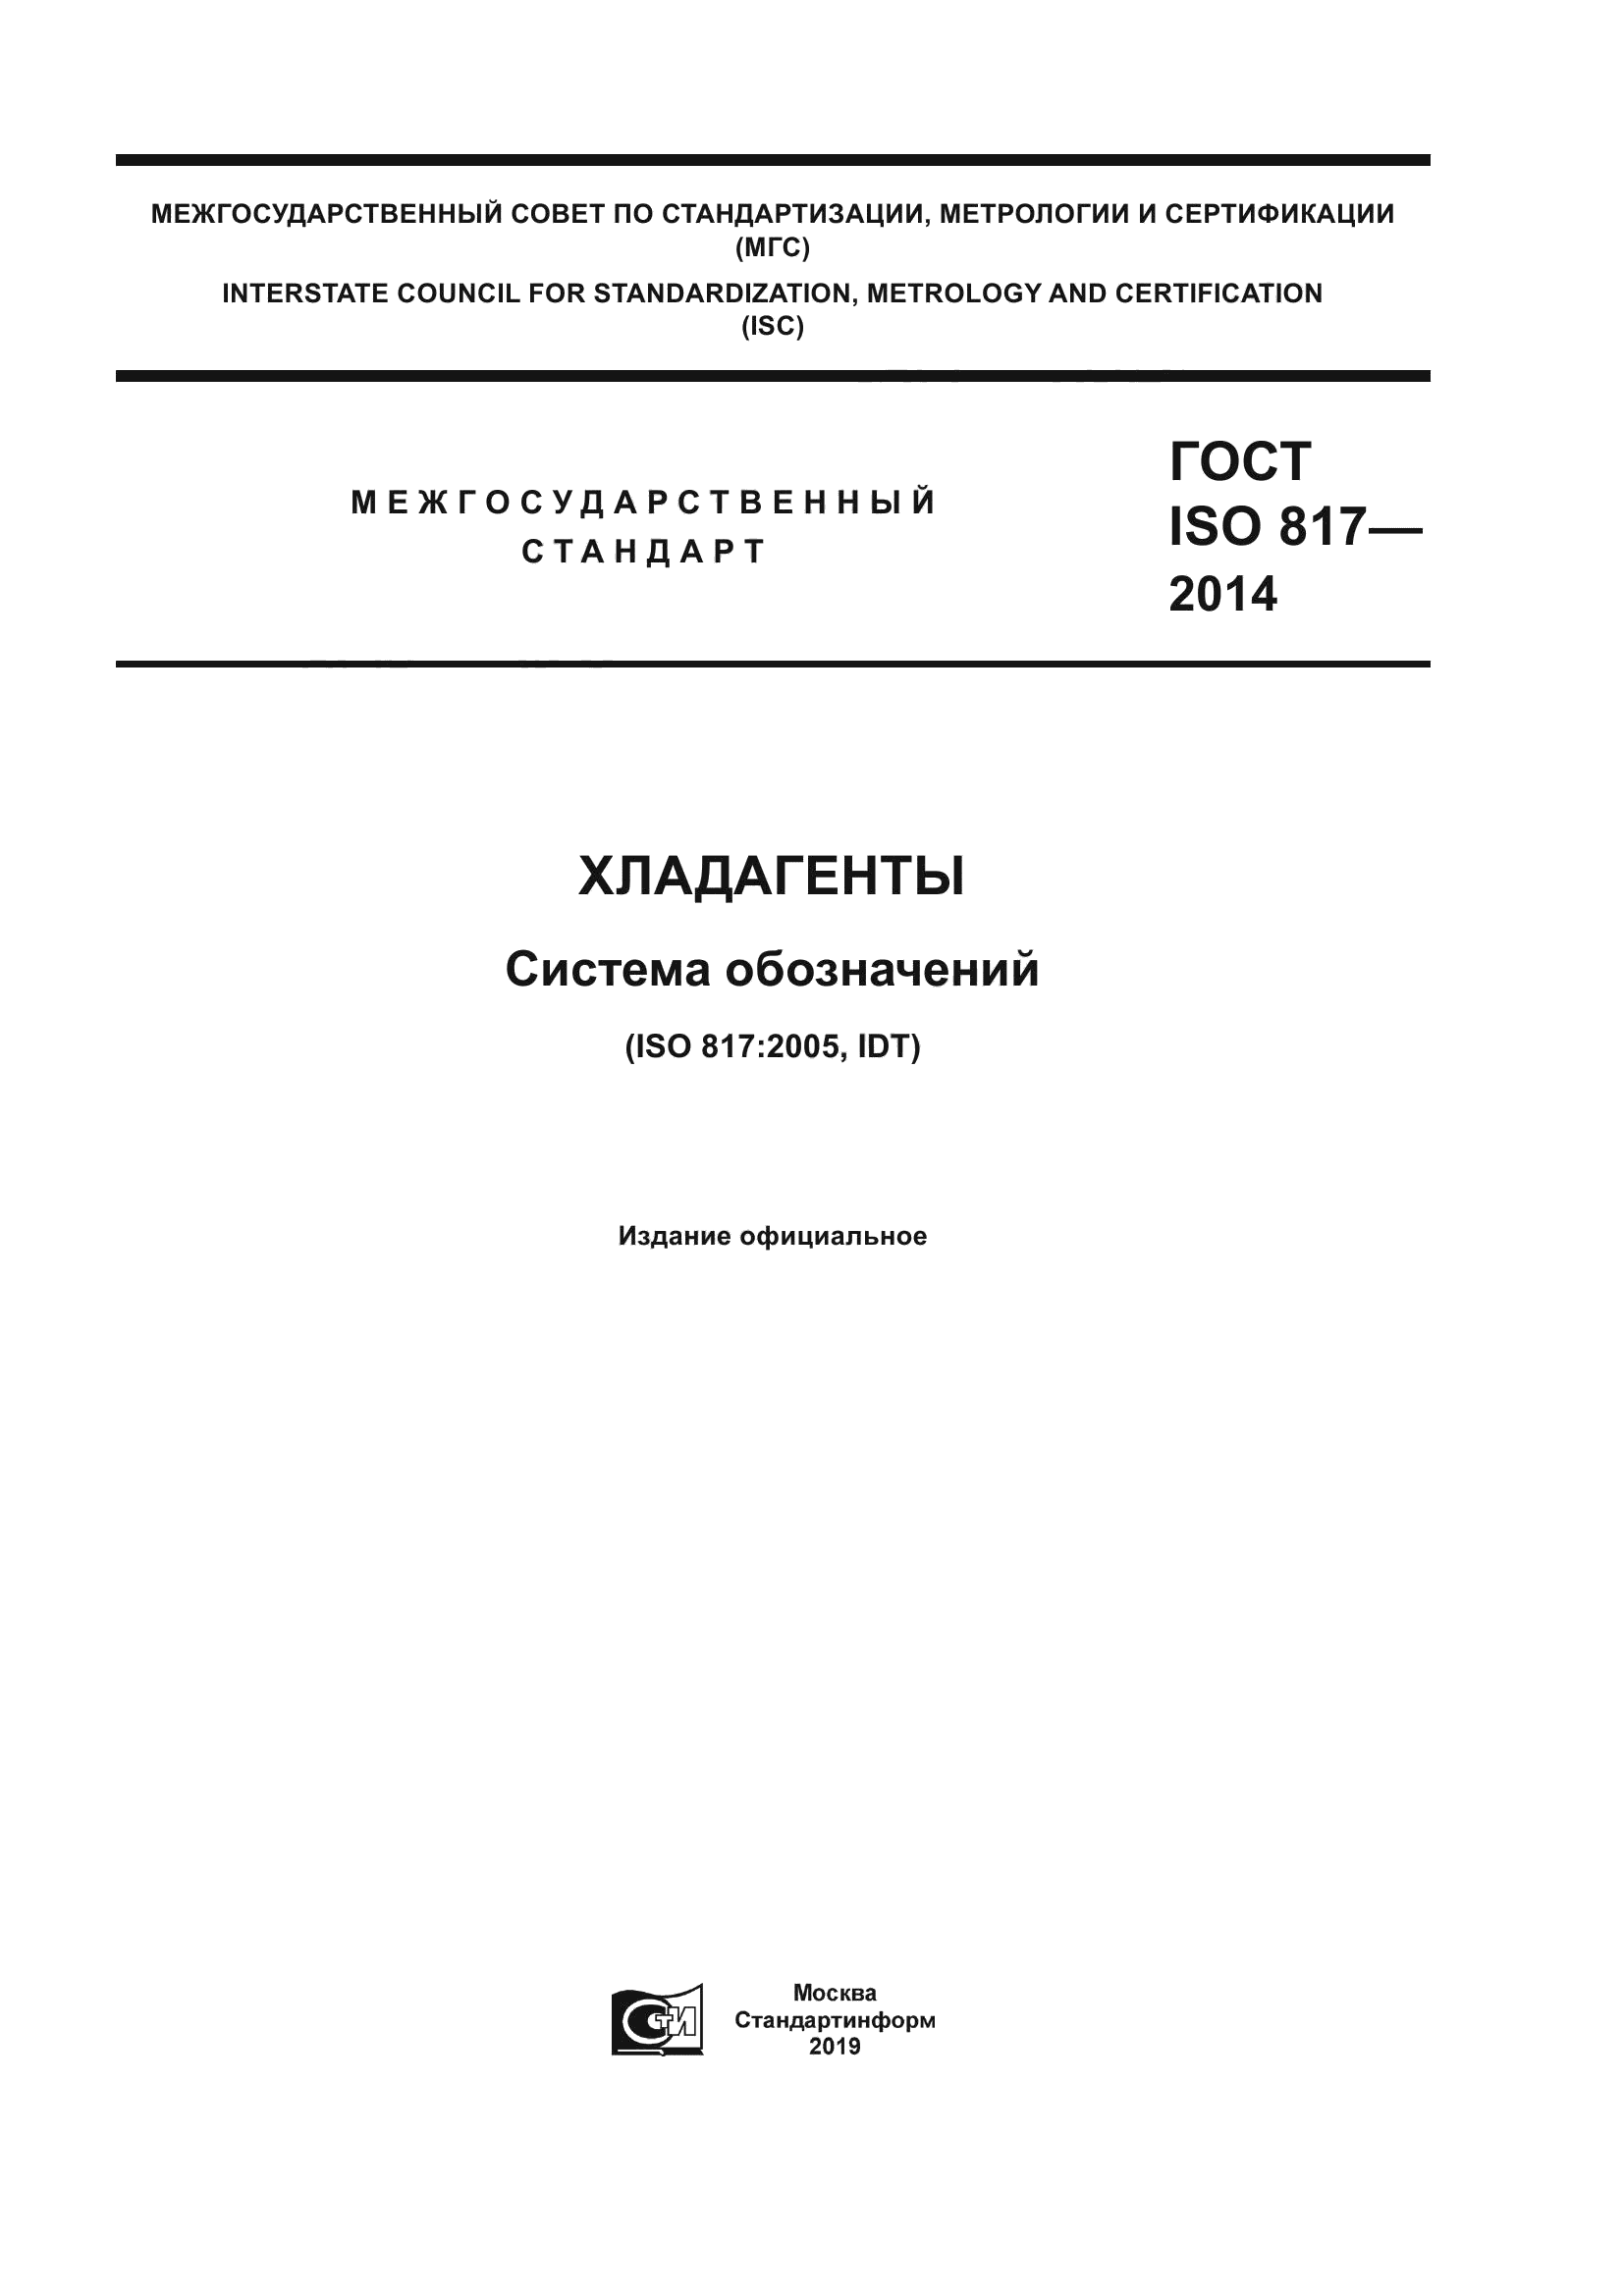 ГОСТ ISO 817-2014